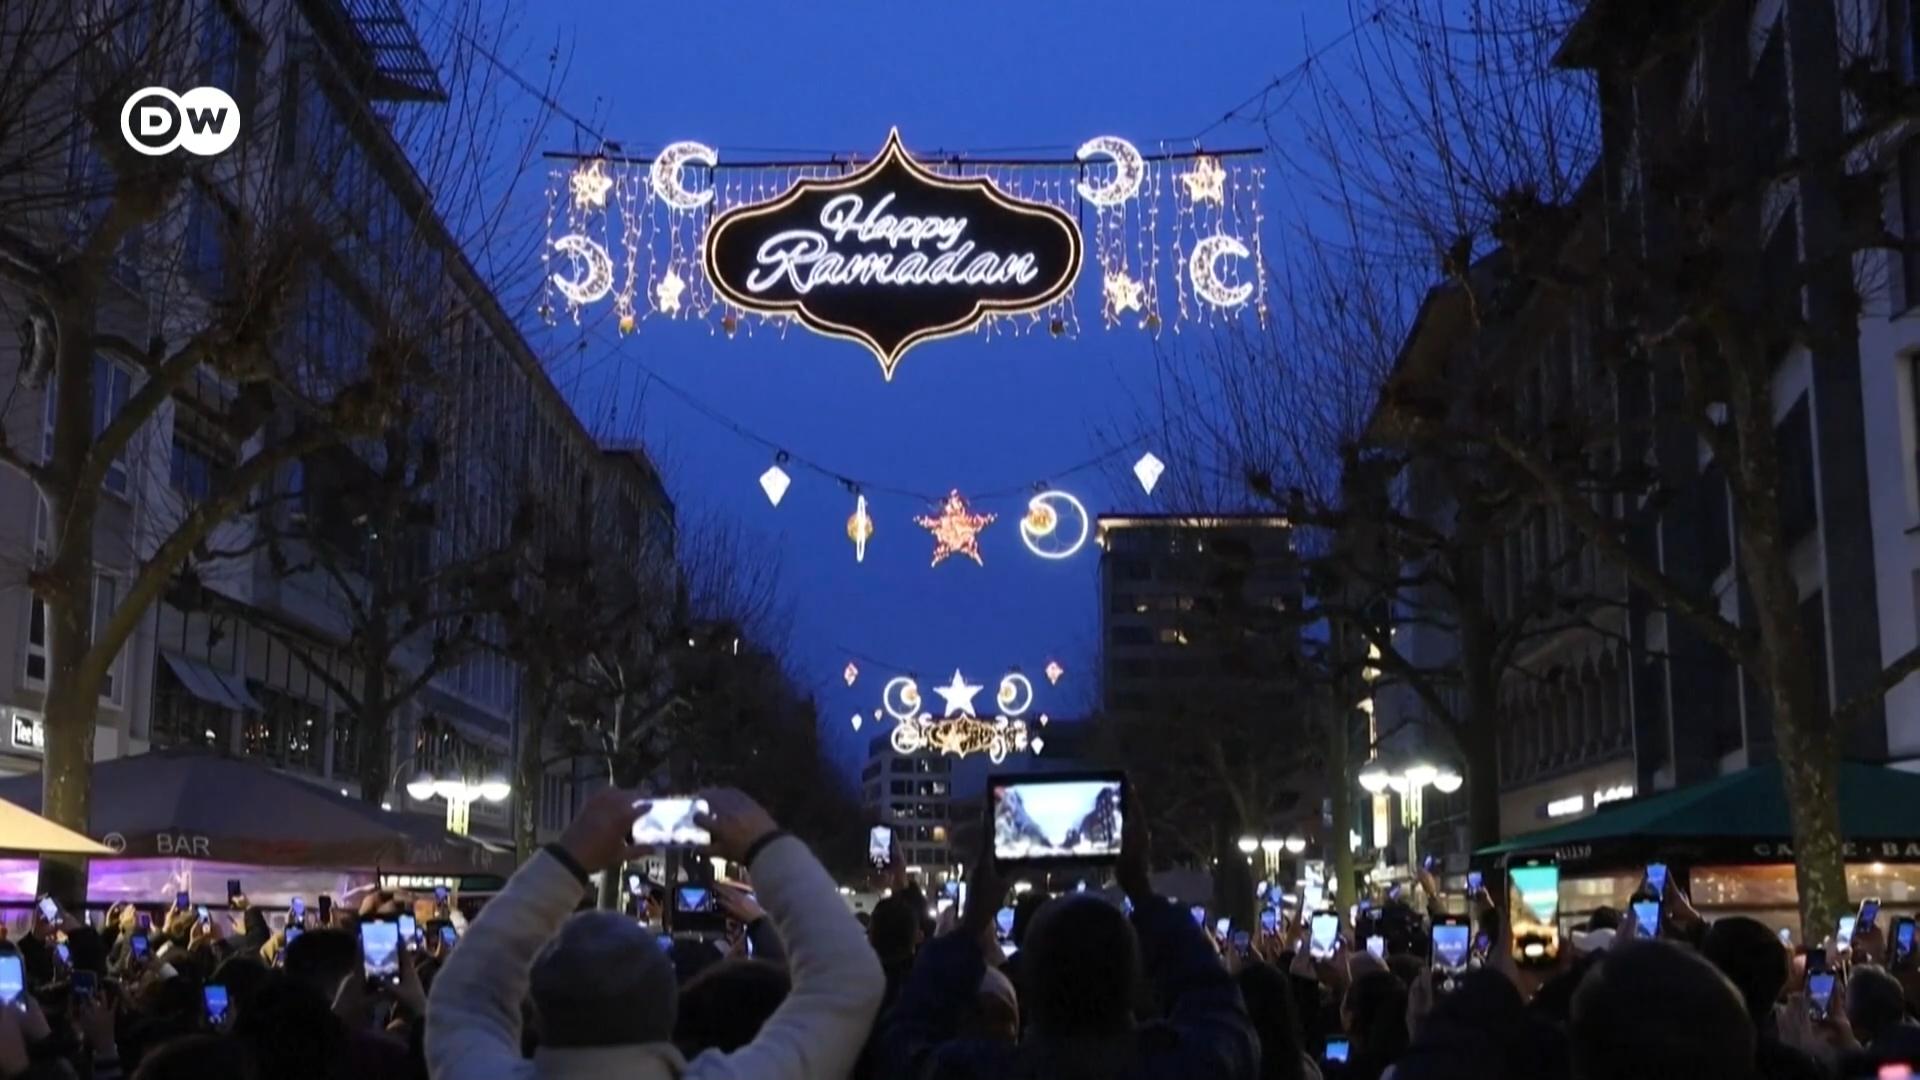 全球穆斯林进入斋月，德国法兰克福首次点灯庆贺。法兰克福副市长称这是一个“美丽的标志”，能增强这个多元化城市的凝聚力。